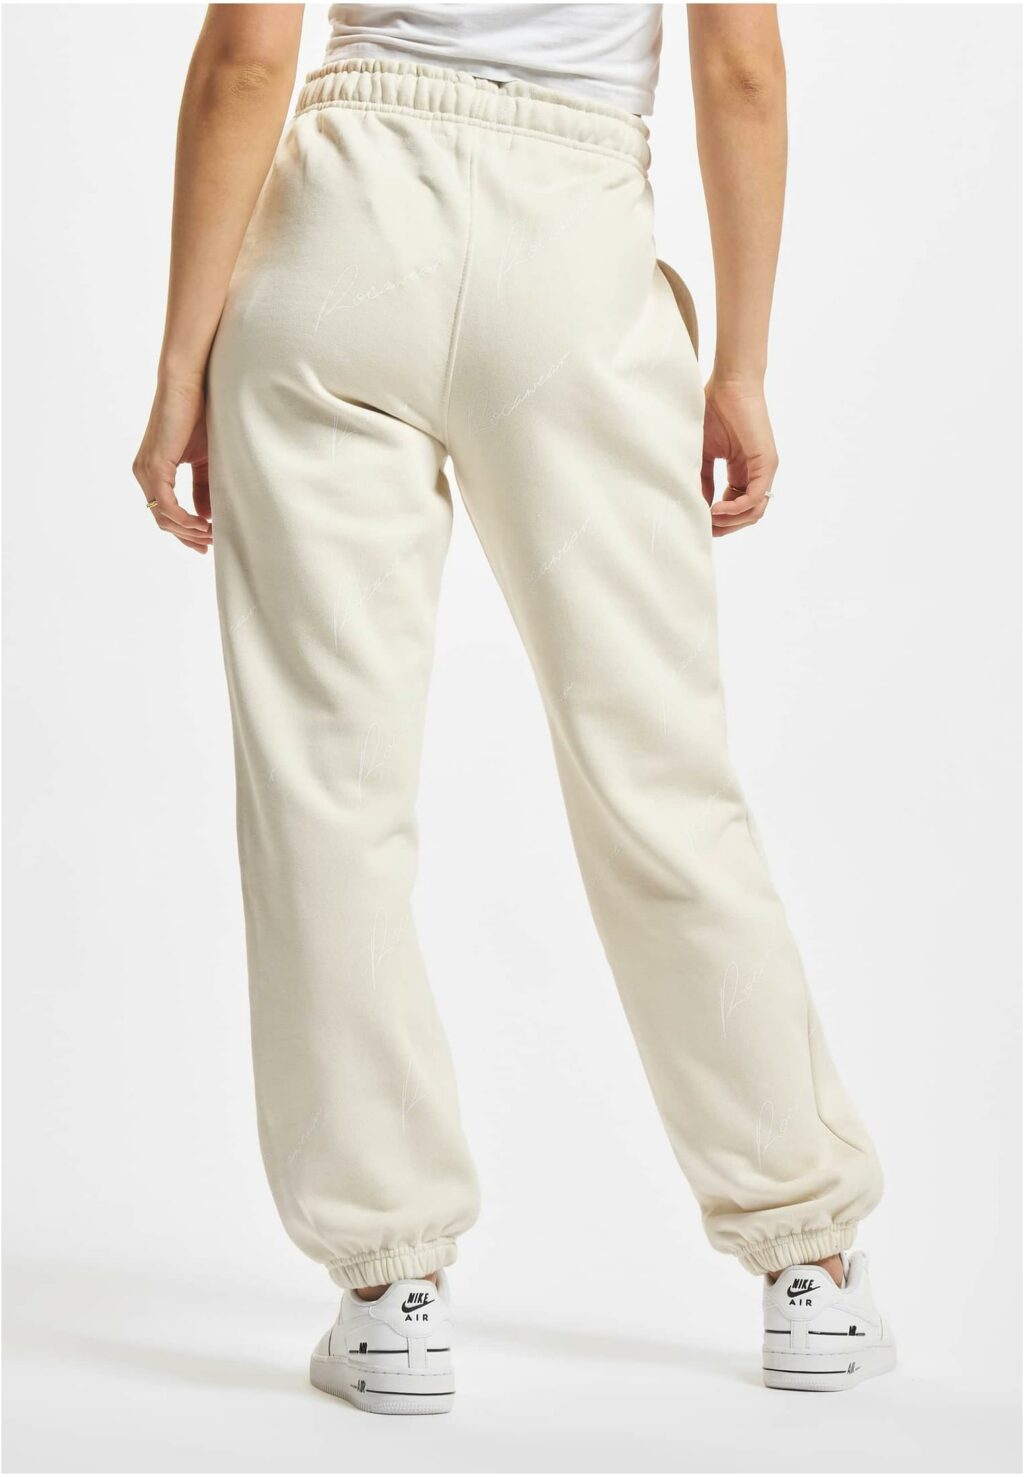 Rocawear Miami Sweatpant white RWLSP006